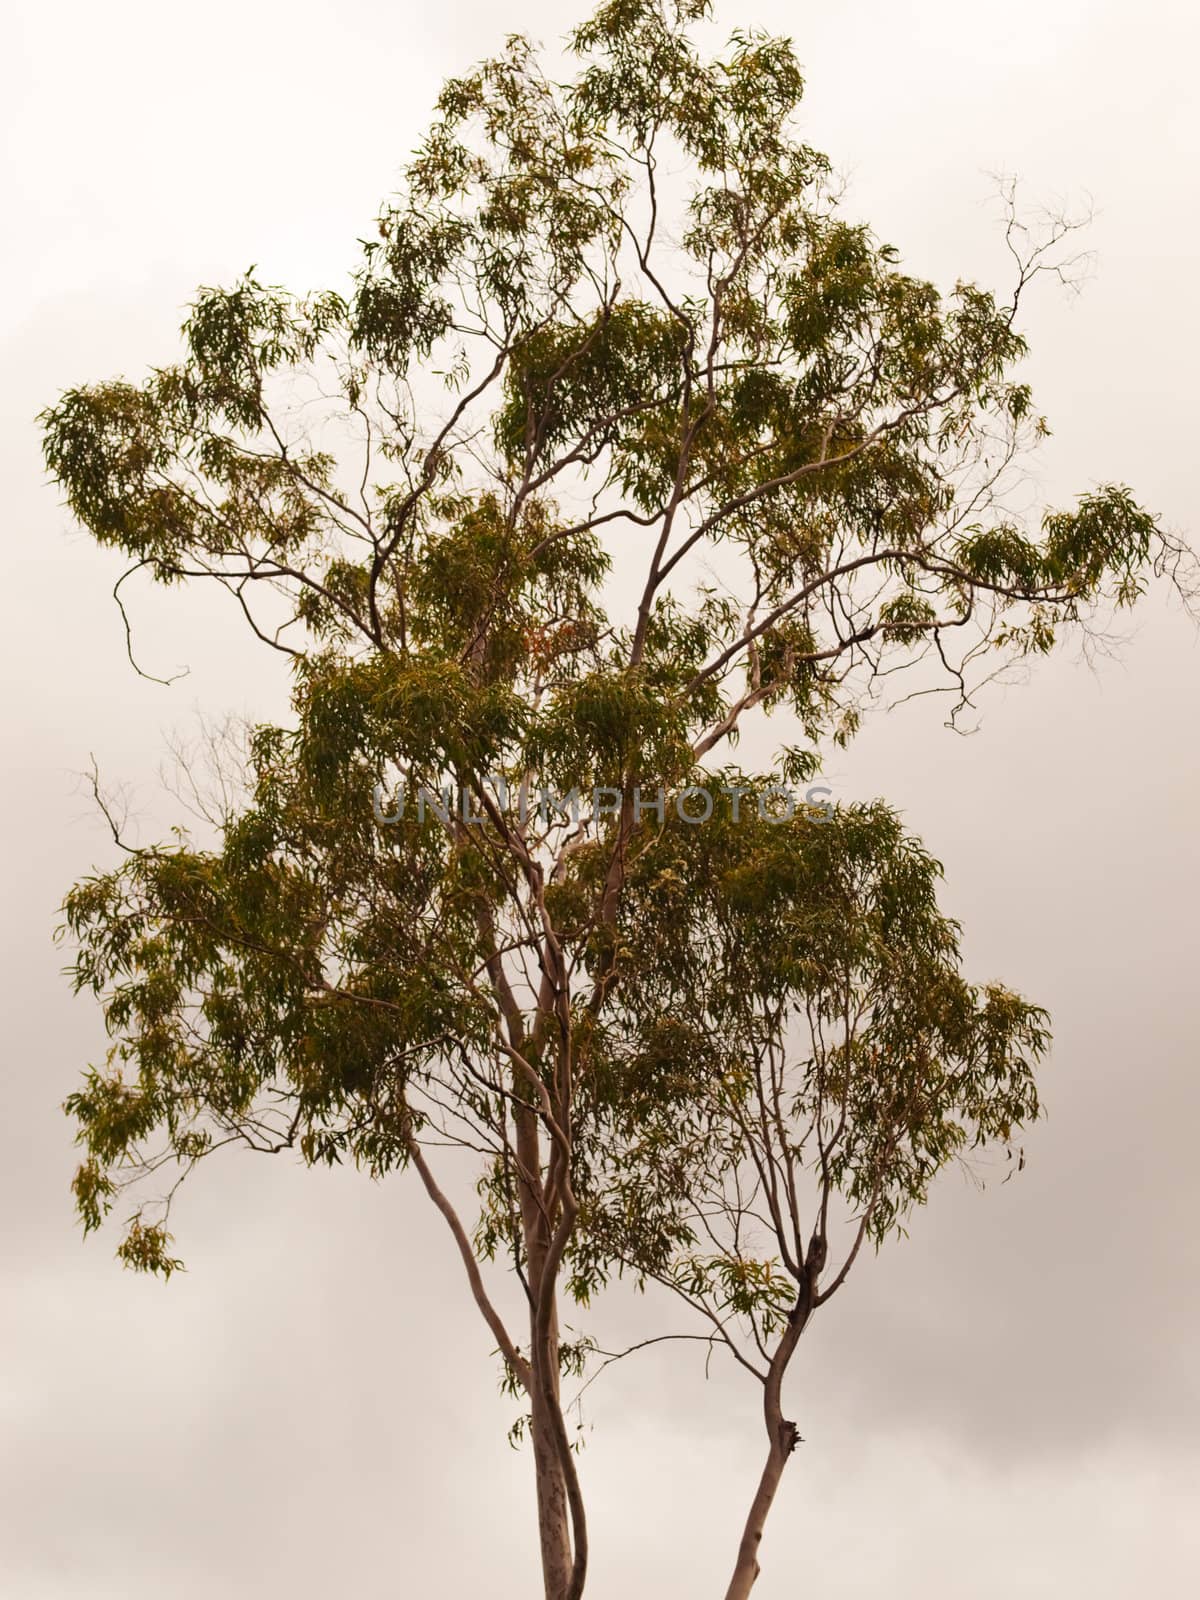 Australian Gum Tree Backdrop by sherj